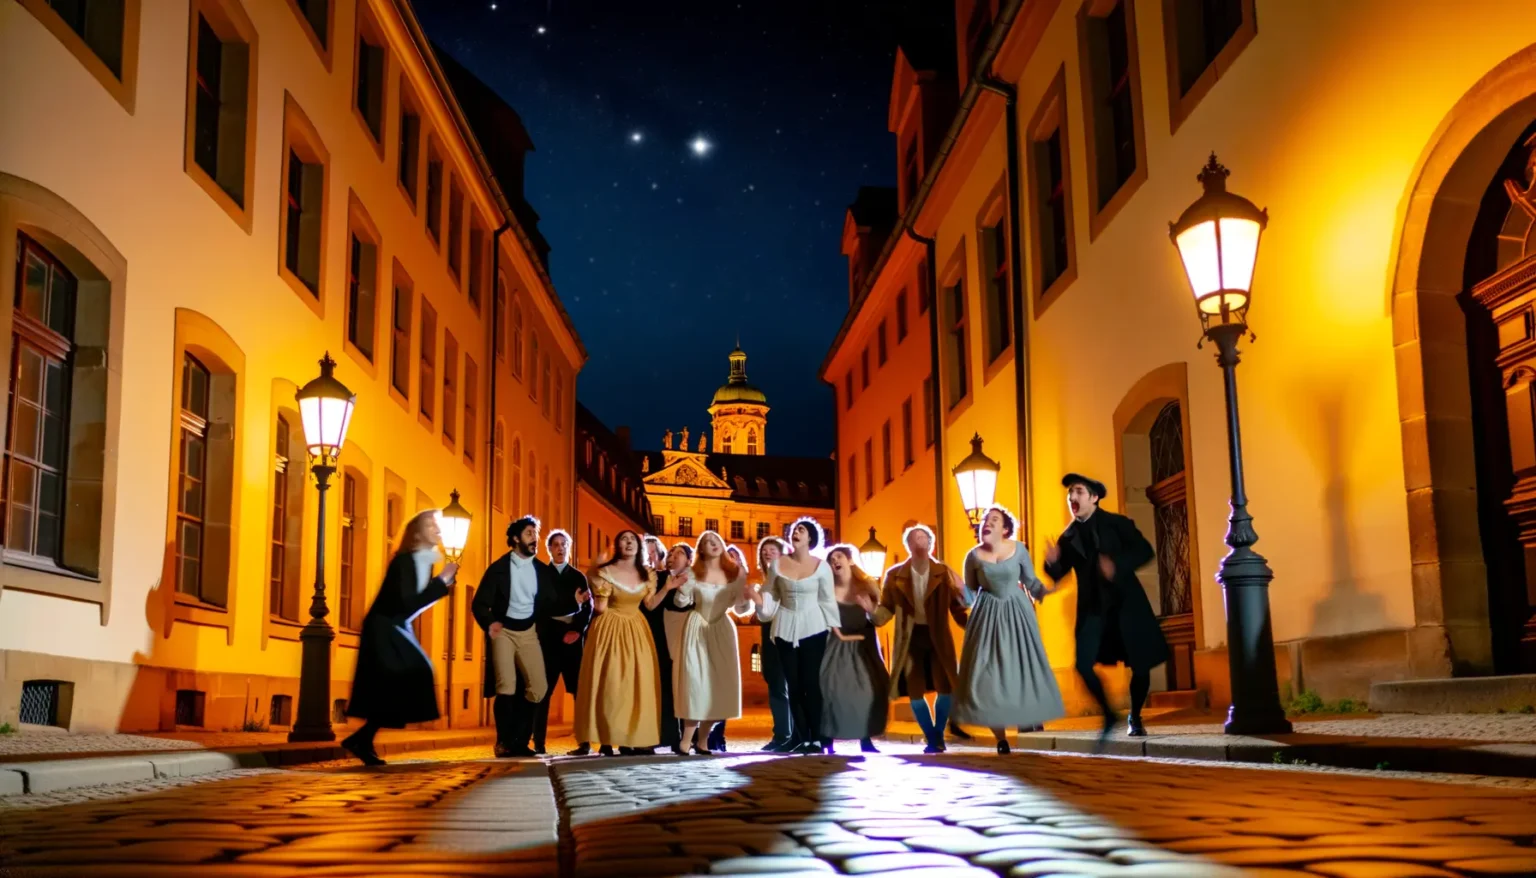 Eine Gruppe von Personen in historischen Kostümen tanzt und singt bei Nacht auf einer gepflasterten Straße in einem alten Stadtviertel. Im Hintergrund leuchten Straßenlaternen und ein barockes Gebäude mit einer beleuchteten Kuppel unter einem sternklaren Himmel.